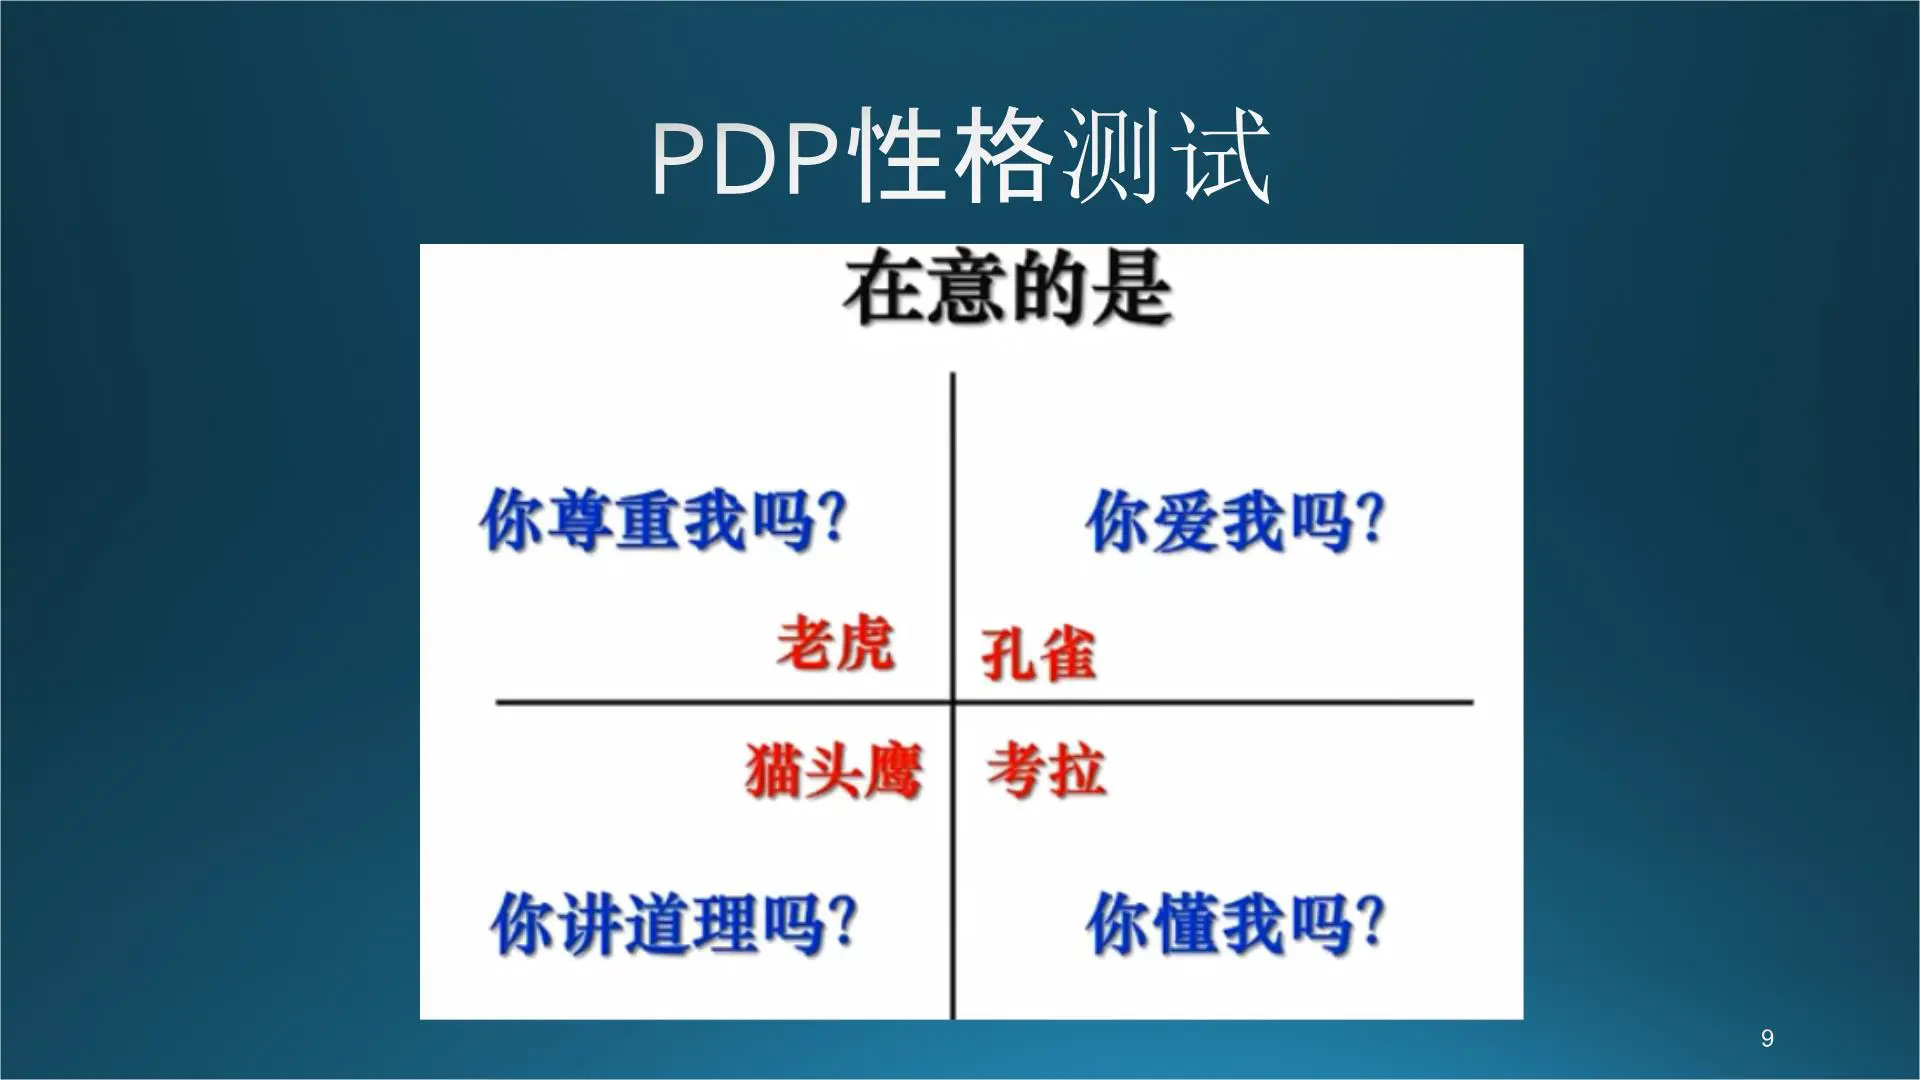 PDP性格测试培训课件插图9